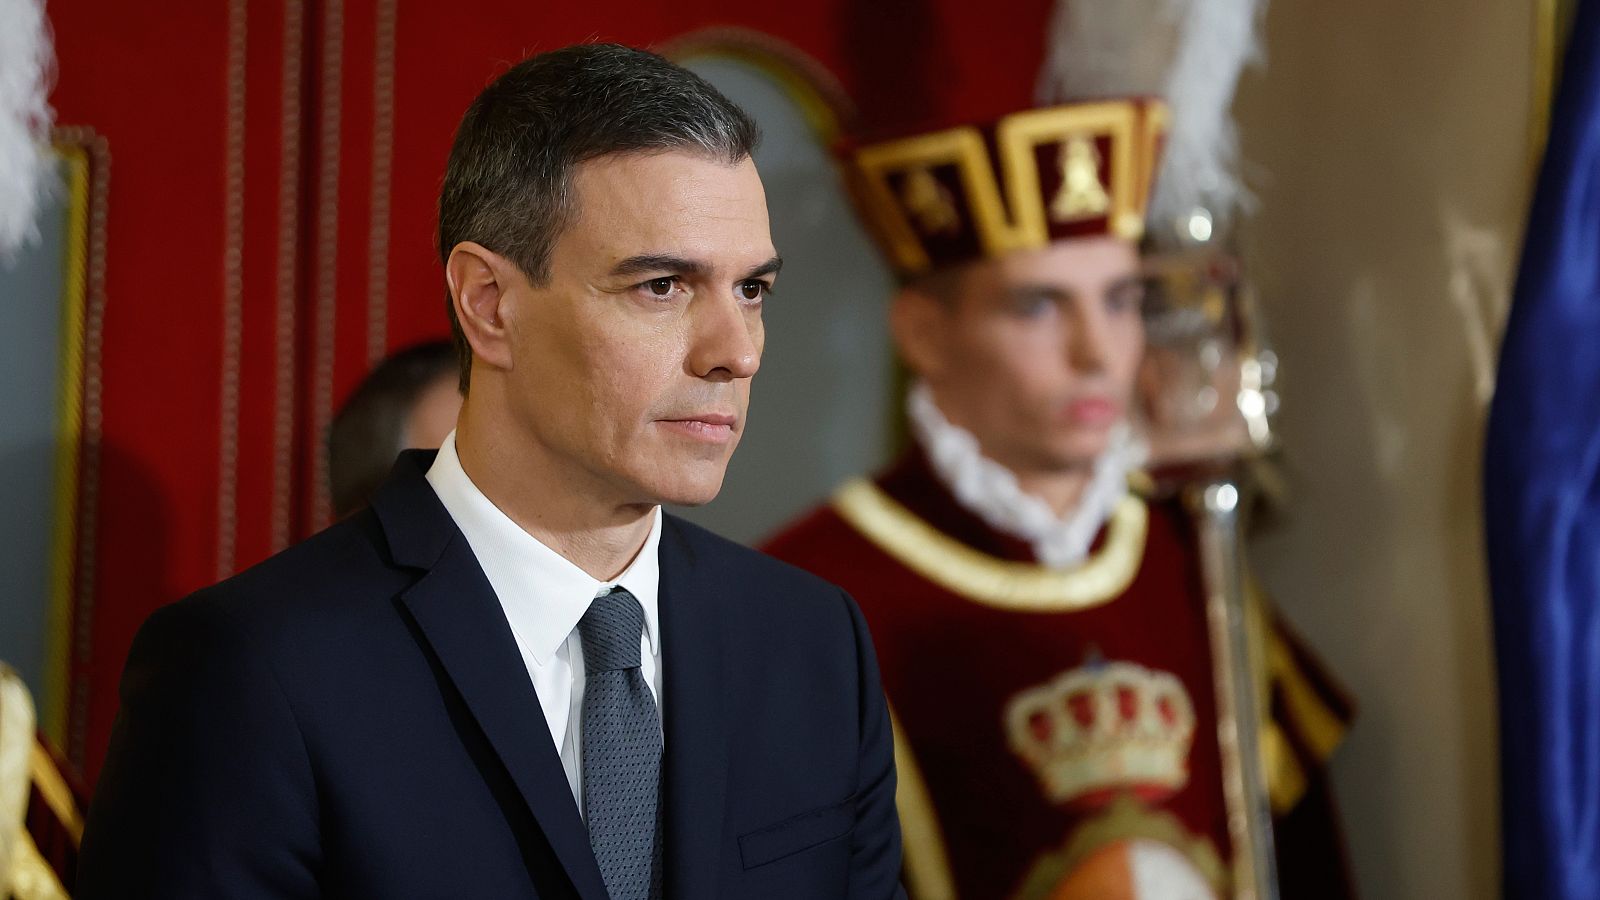 El presidente del Gobierno, Pedro Sánchez,  propondrá a Alberto Núñez Feijóo crear una "comisión de trabajo" este mes para renovar el Poder Judicial.